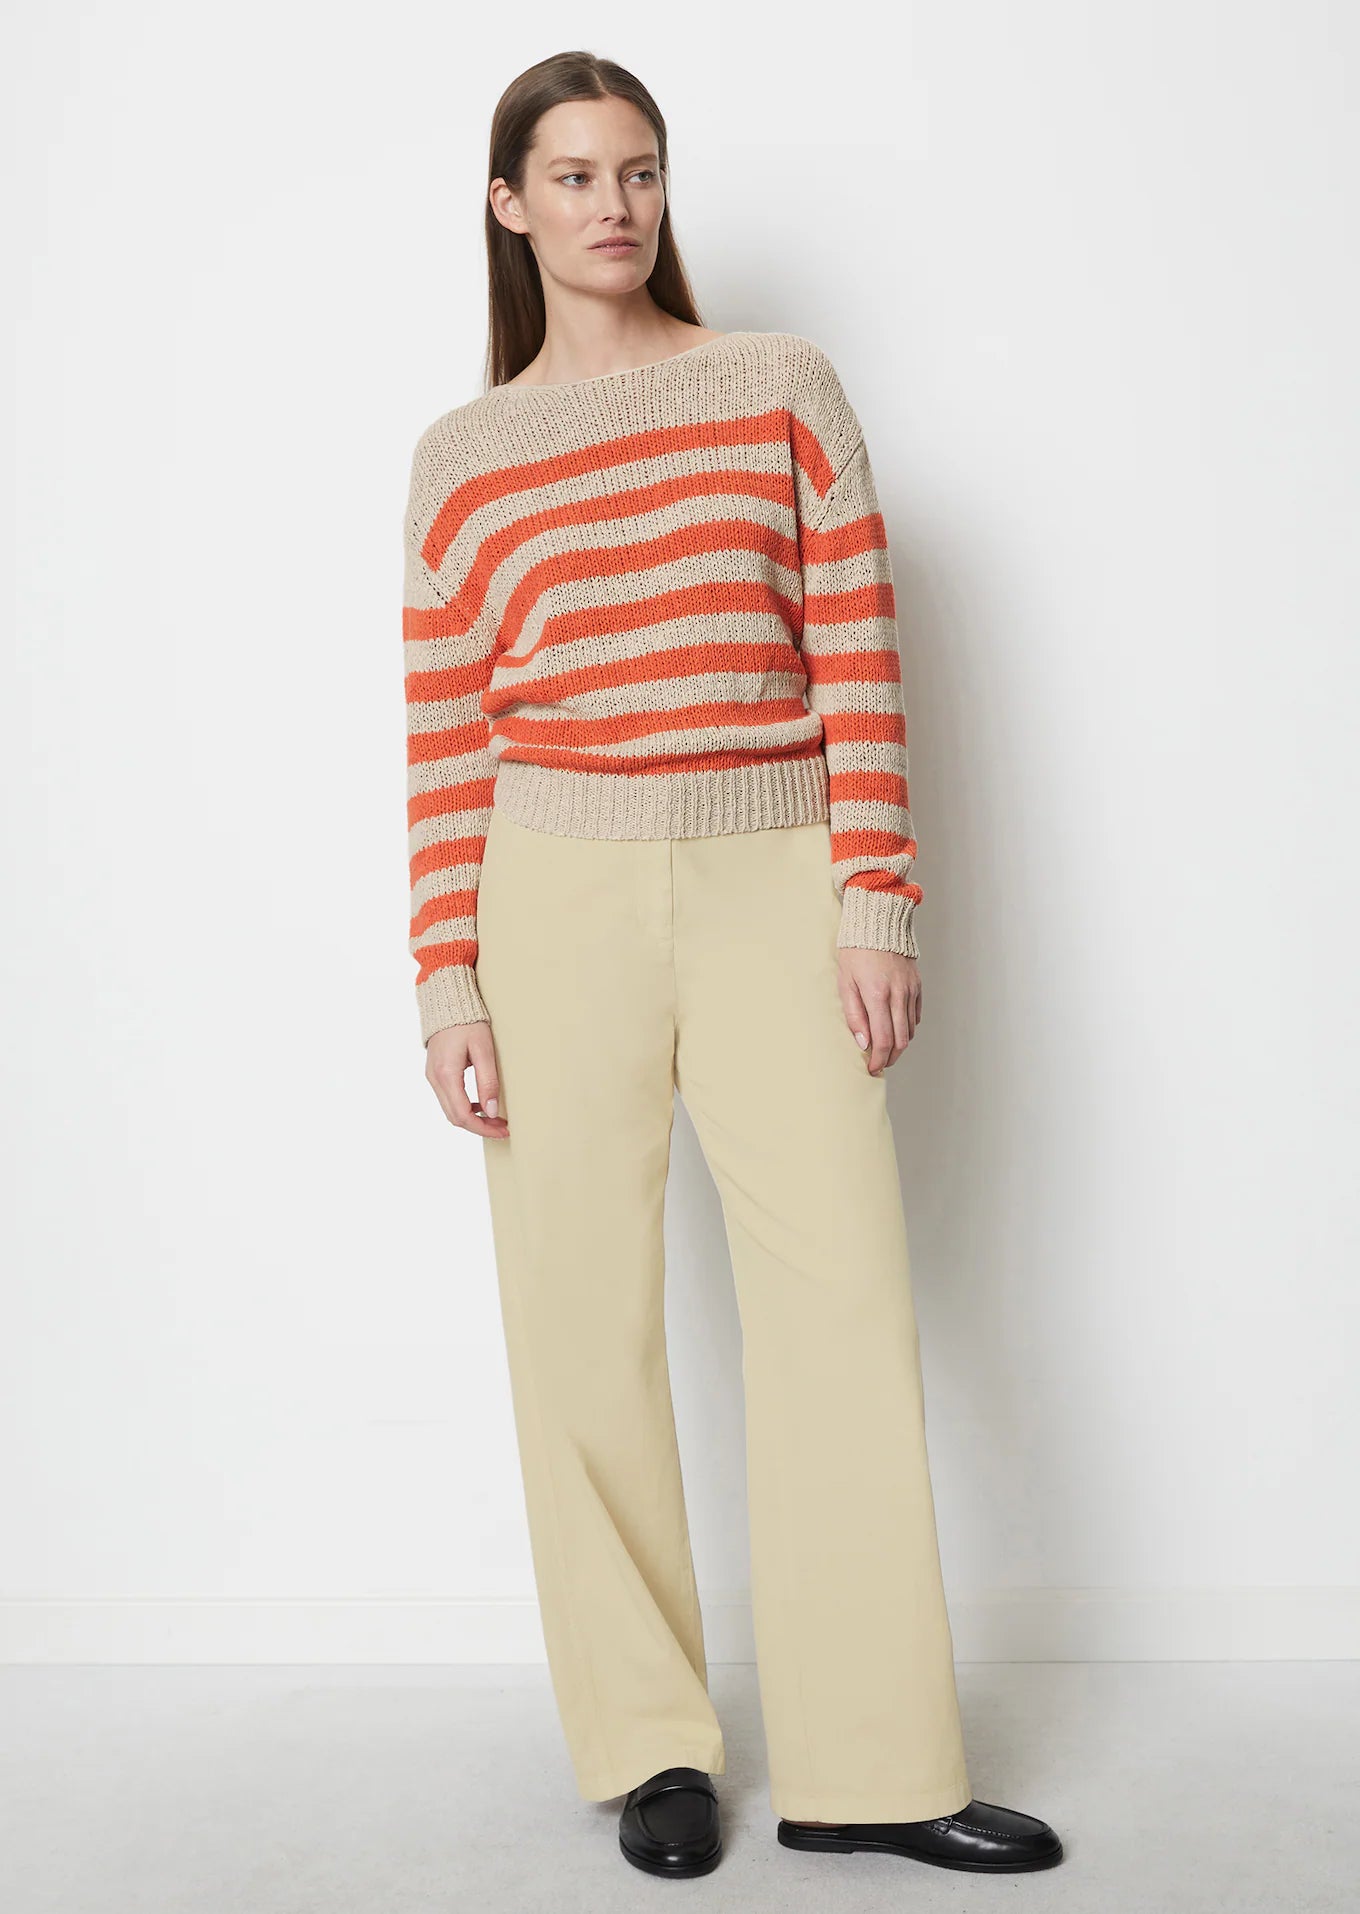 Longsleeve Stripe Pullover in Fruit Orange